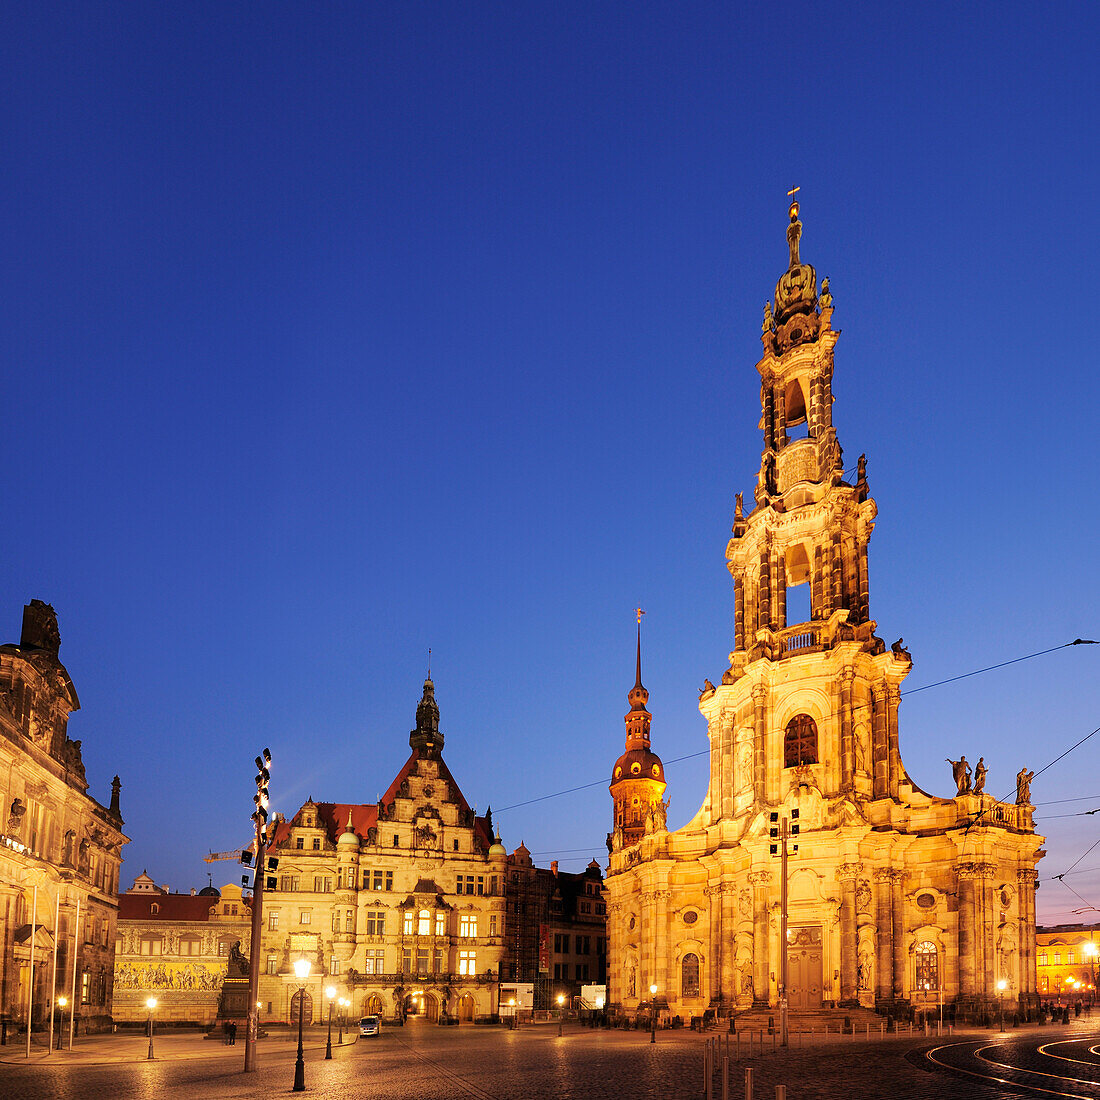 Beleuchteter Schlossplatz mit Ständehaus, Schloss und Kathedrale, Schlossplatz, Dresden, Sachsen, Deutschland, Europa